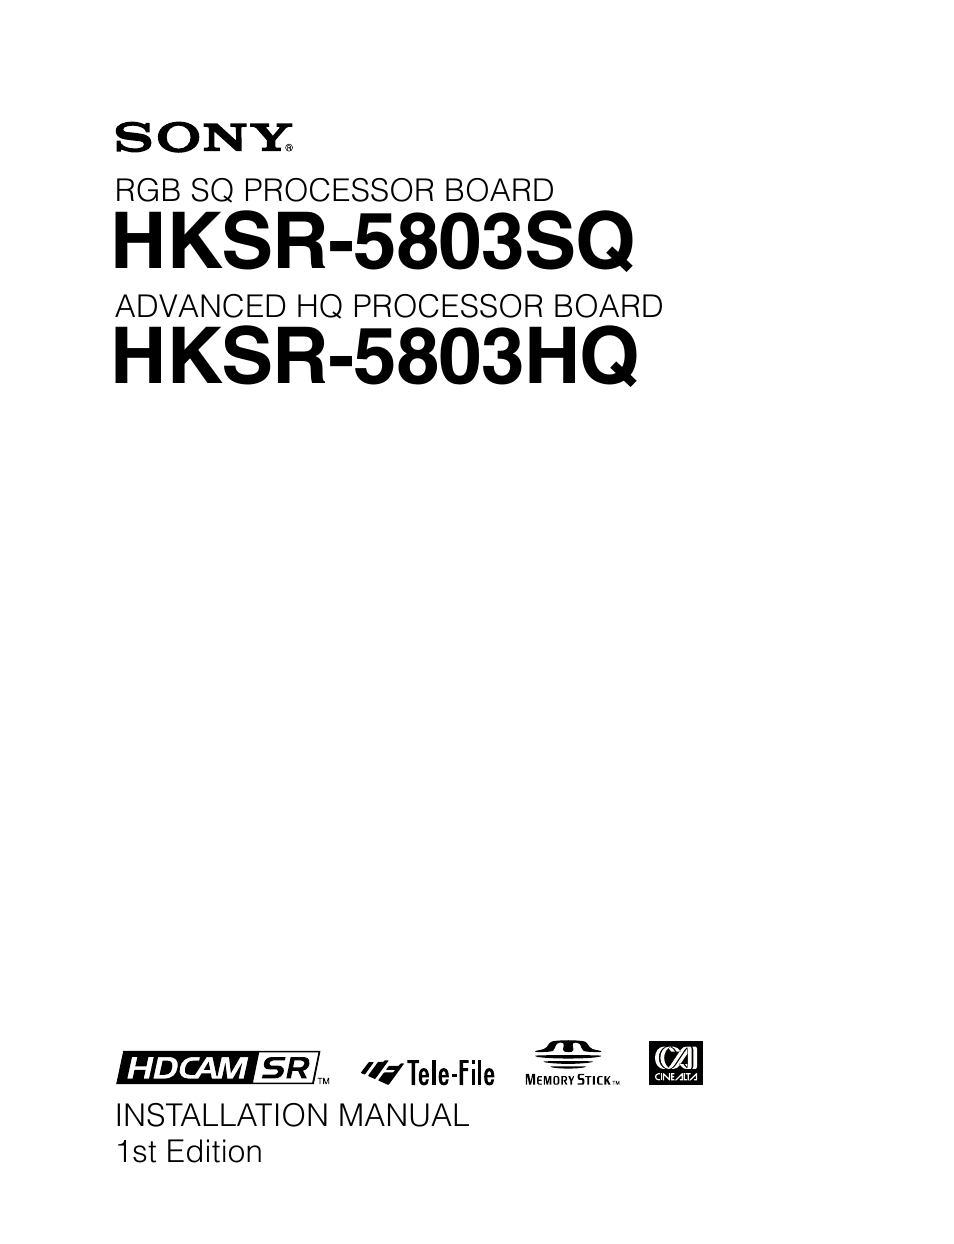 HKSR-5803SQ